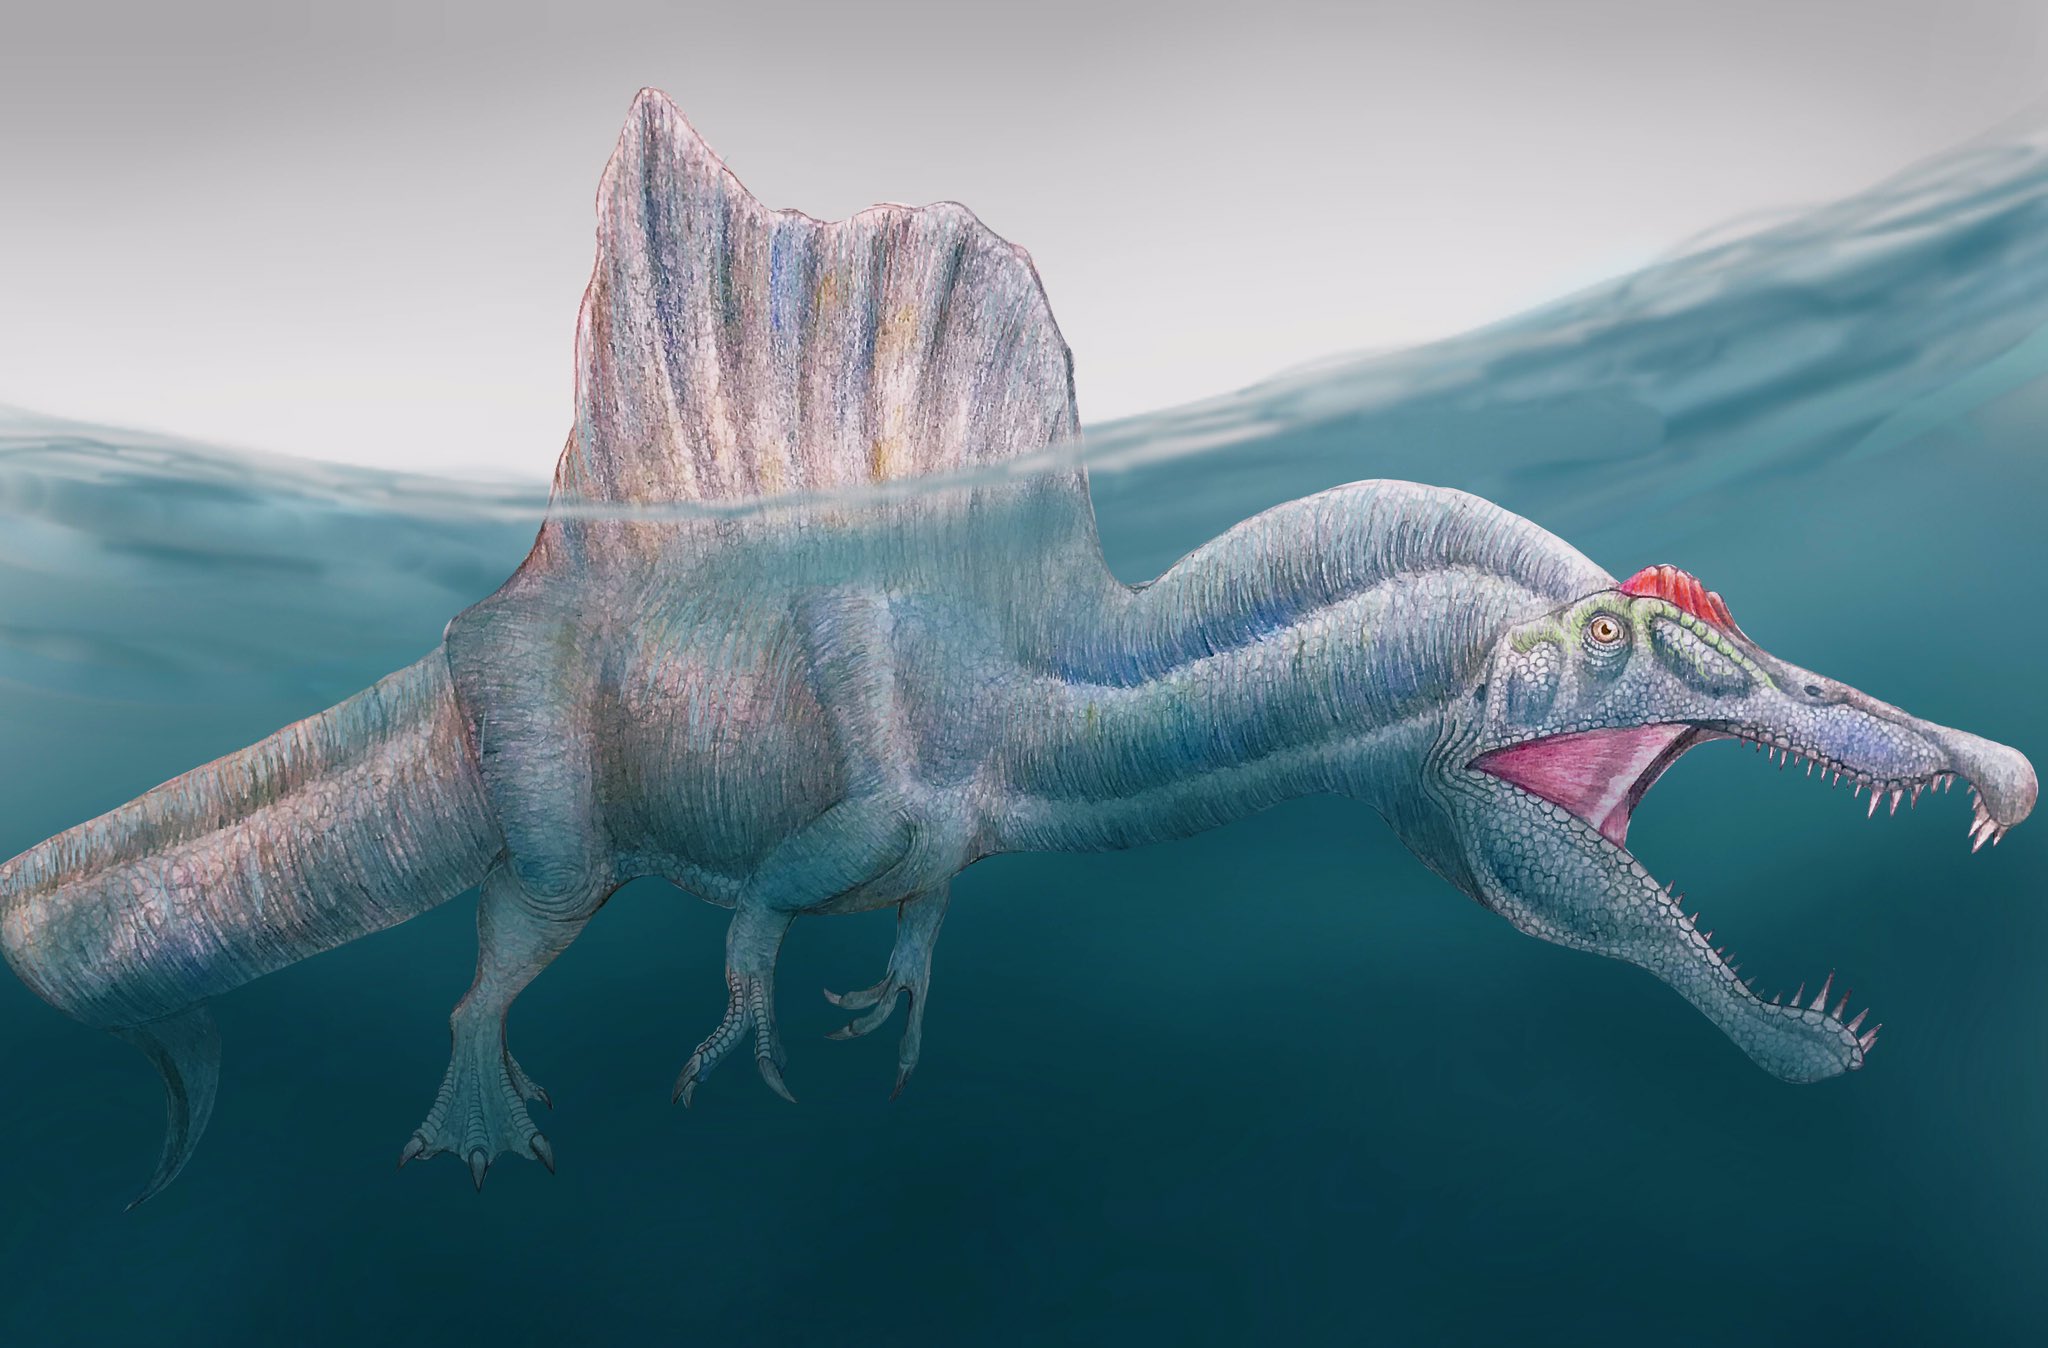 なぽりたん ちゃびんなぱすた スピノサウルスを描きました 結構頑張った イラスト恐竜博物館 絵描きさんと繋がりたい T Co Lixh2jsvmq Twitter